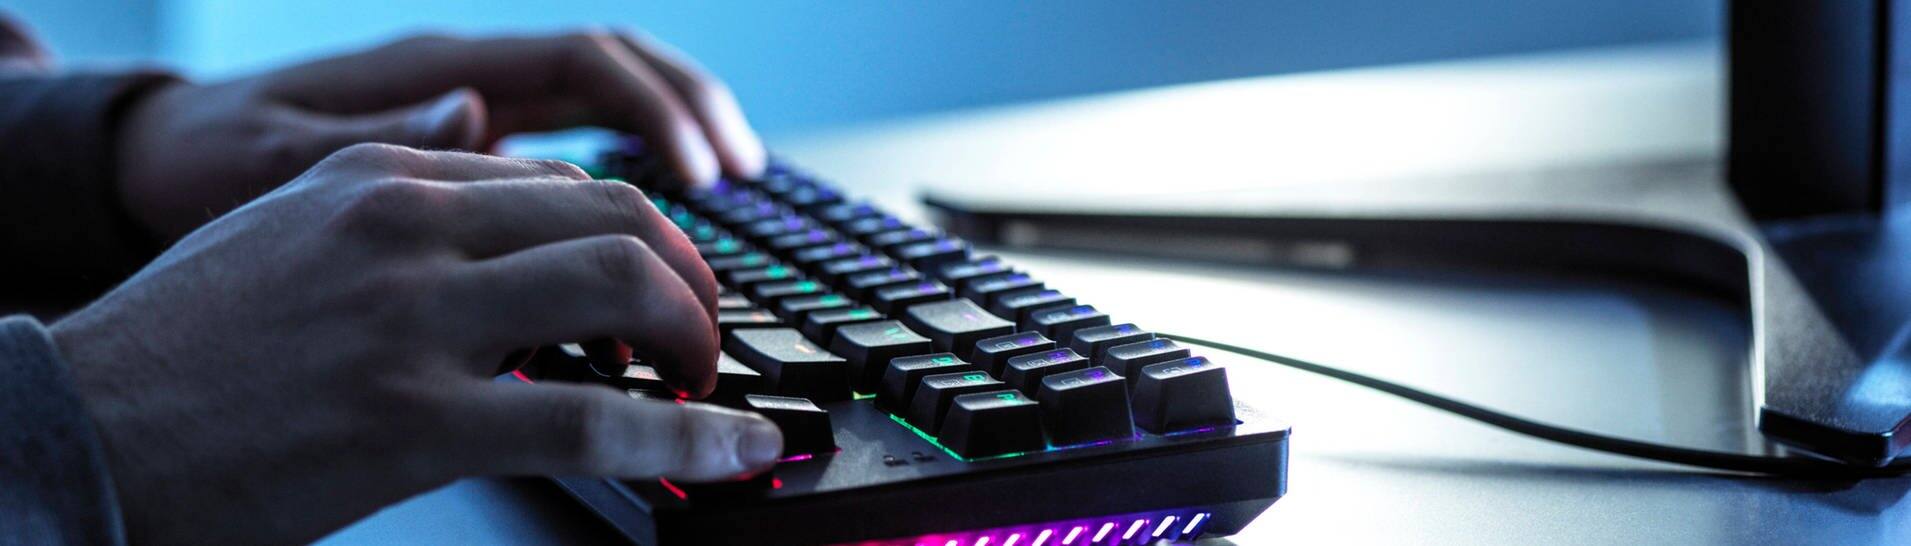 Hände liegen auf einer Gaming-Tastatur, daneben eine Gaming-Maus (Foto: IMAGO, imago images/Westend61)